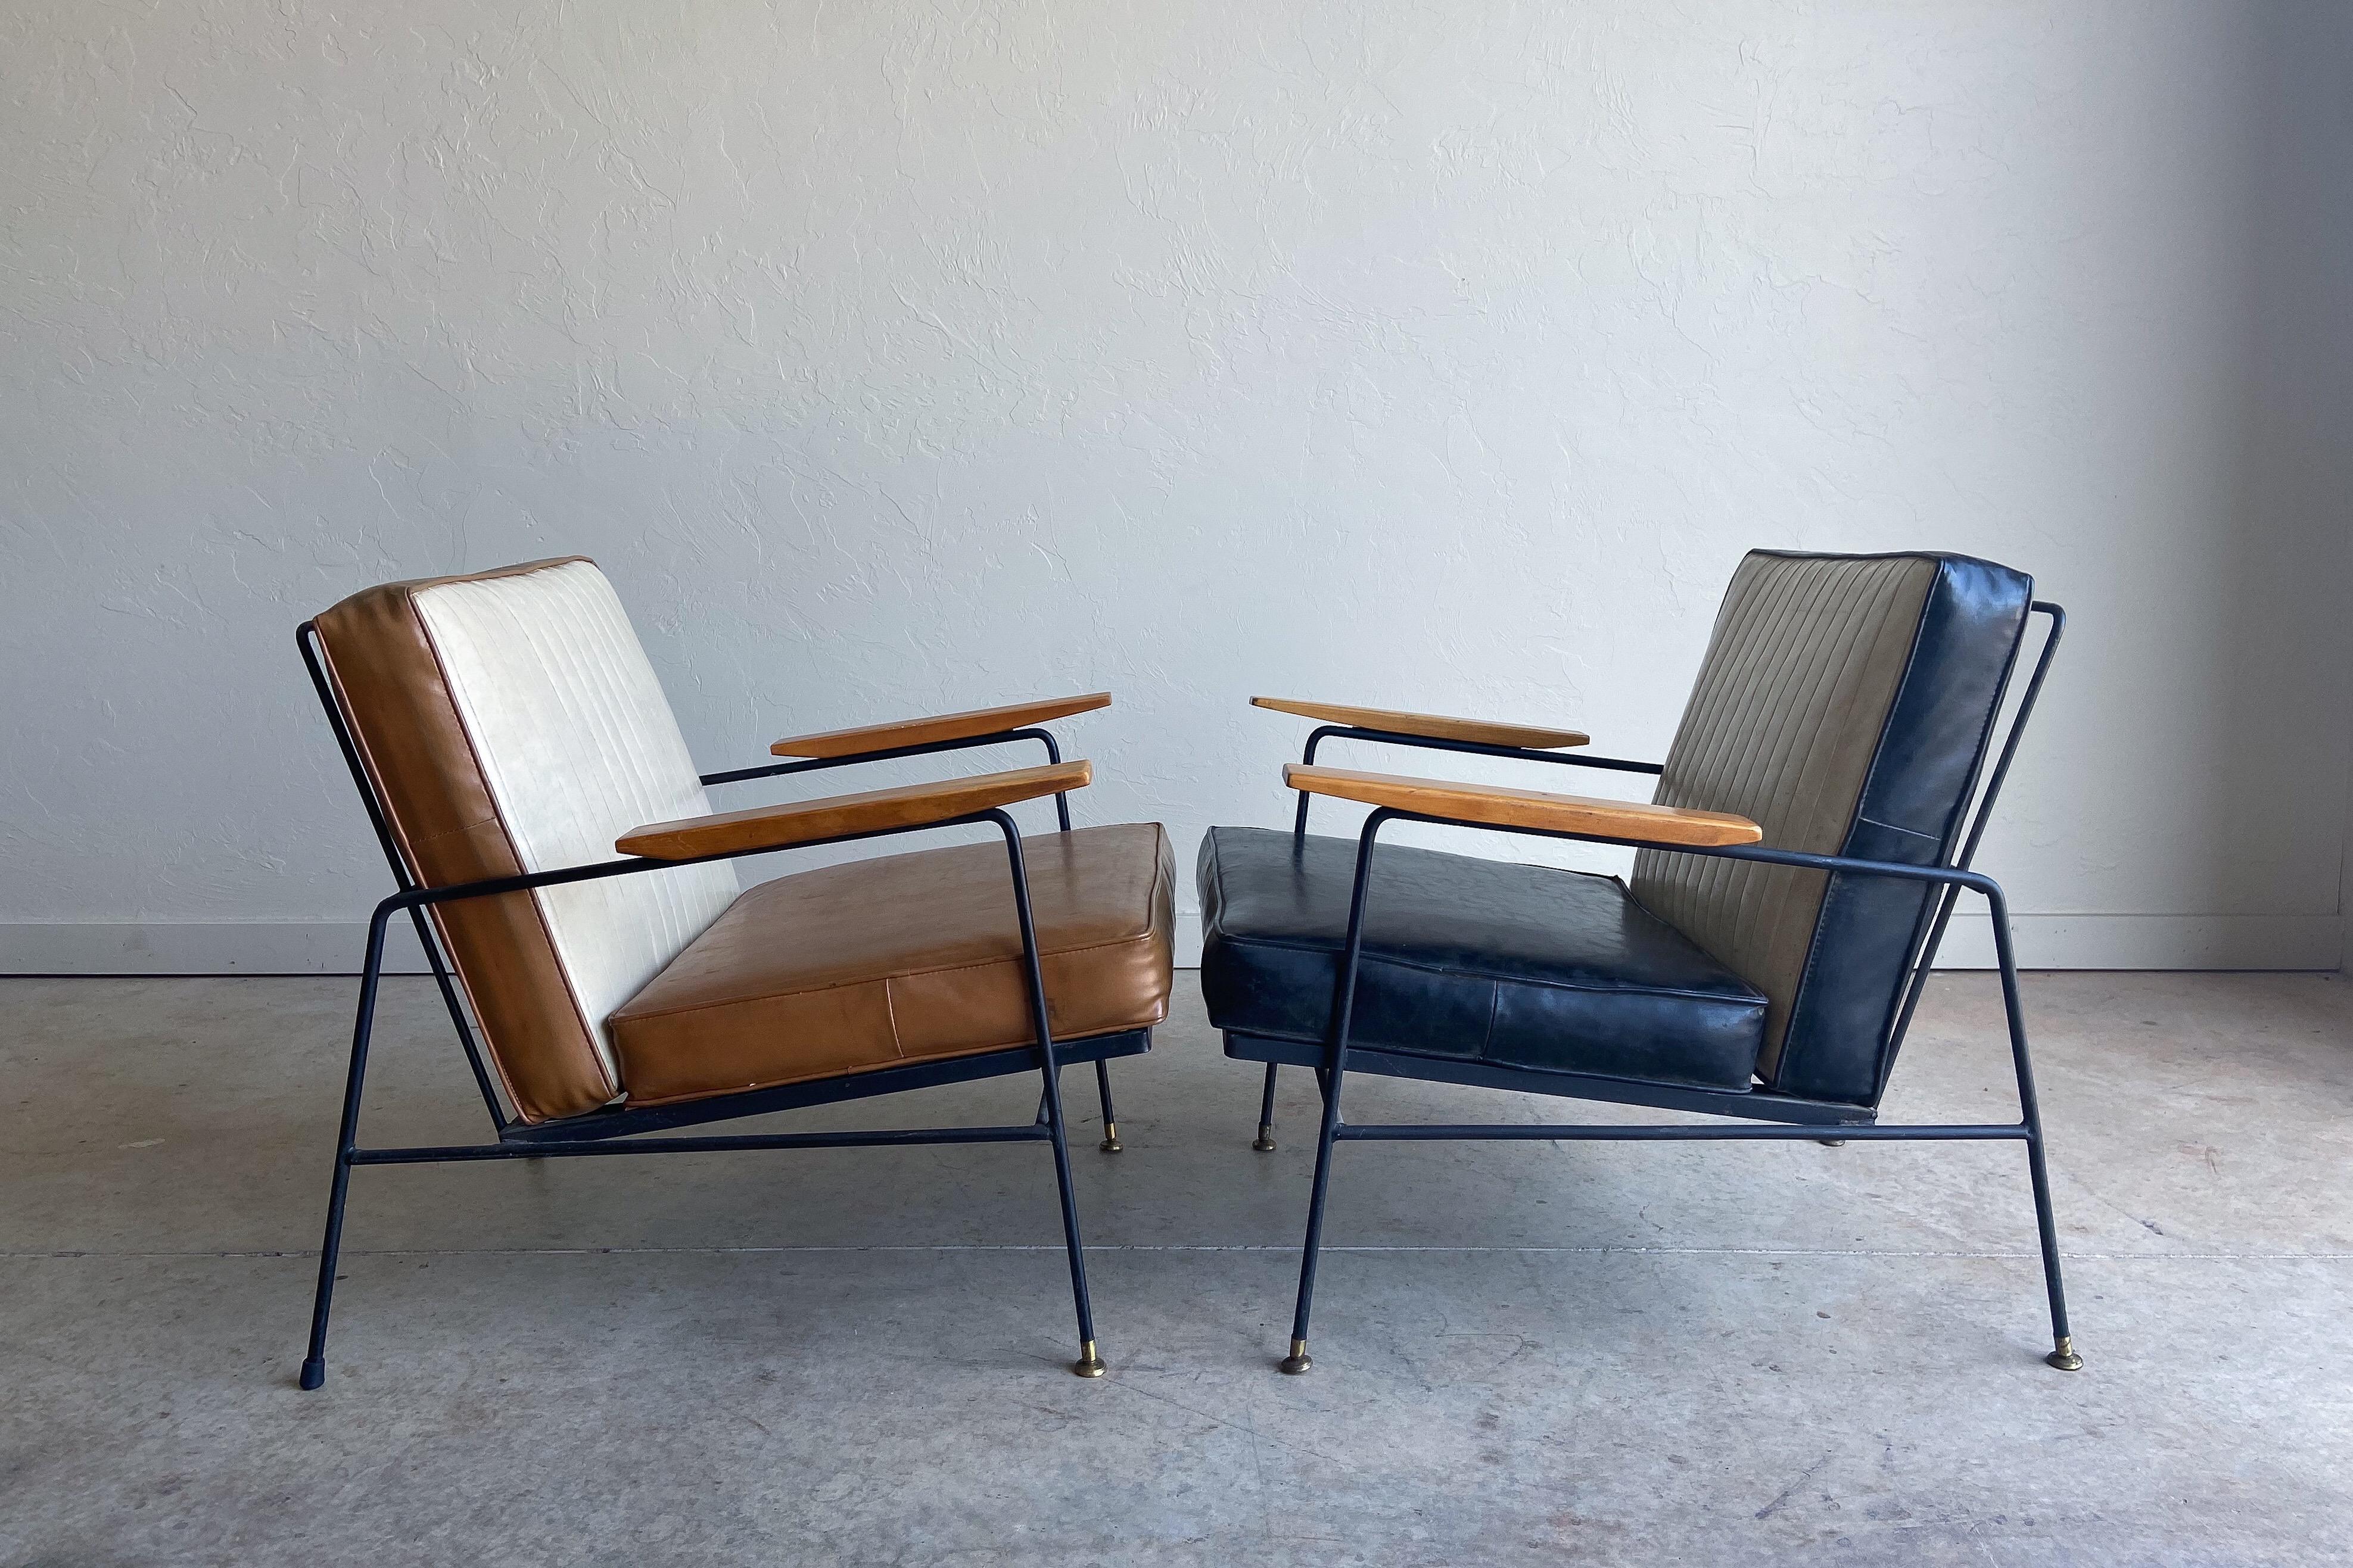 Une fantastique paire de chaises de salon en fer et en bois de Richard McCarthy. Ce sont des exemples parfaits de design moderne américain : lignes épurées, construction de qualité et fonctionnalité. 

Ils ont de belles proportions et sont très